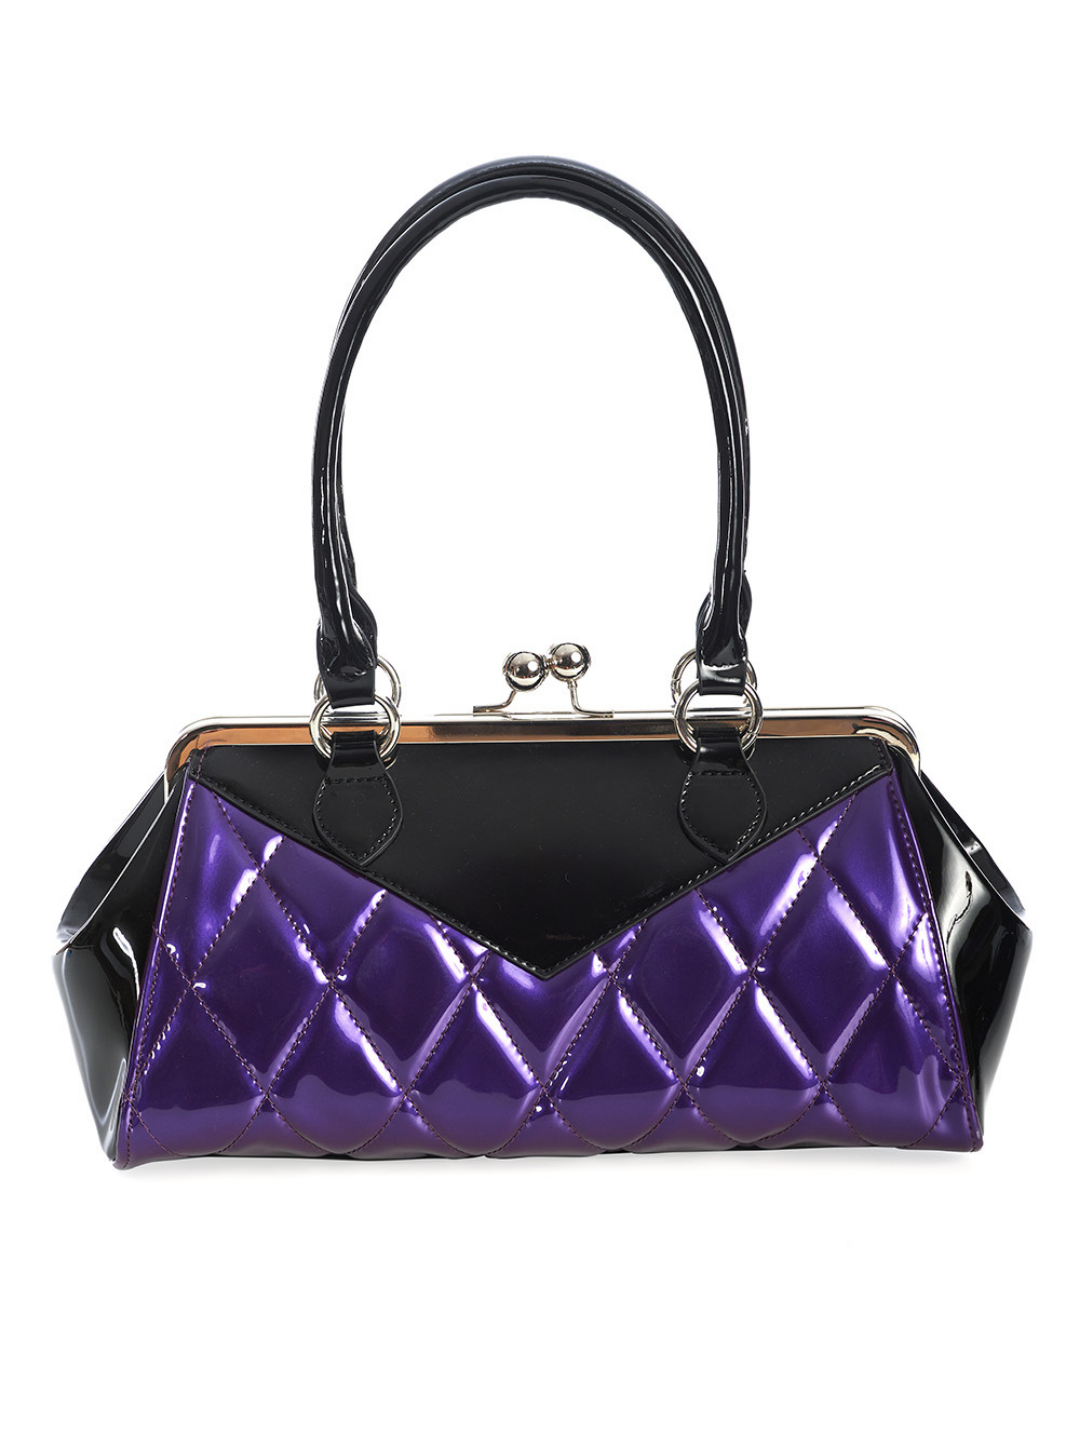 Lily Mae Handbag - Purple